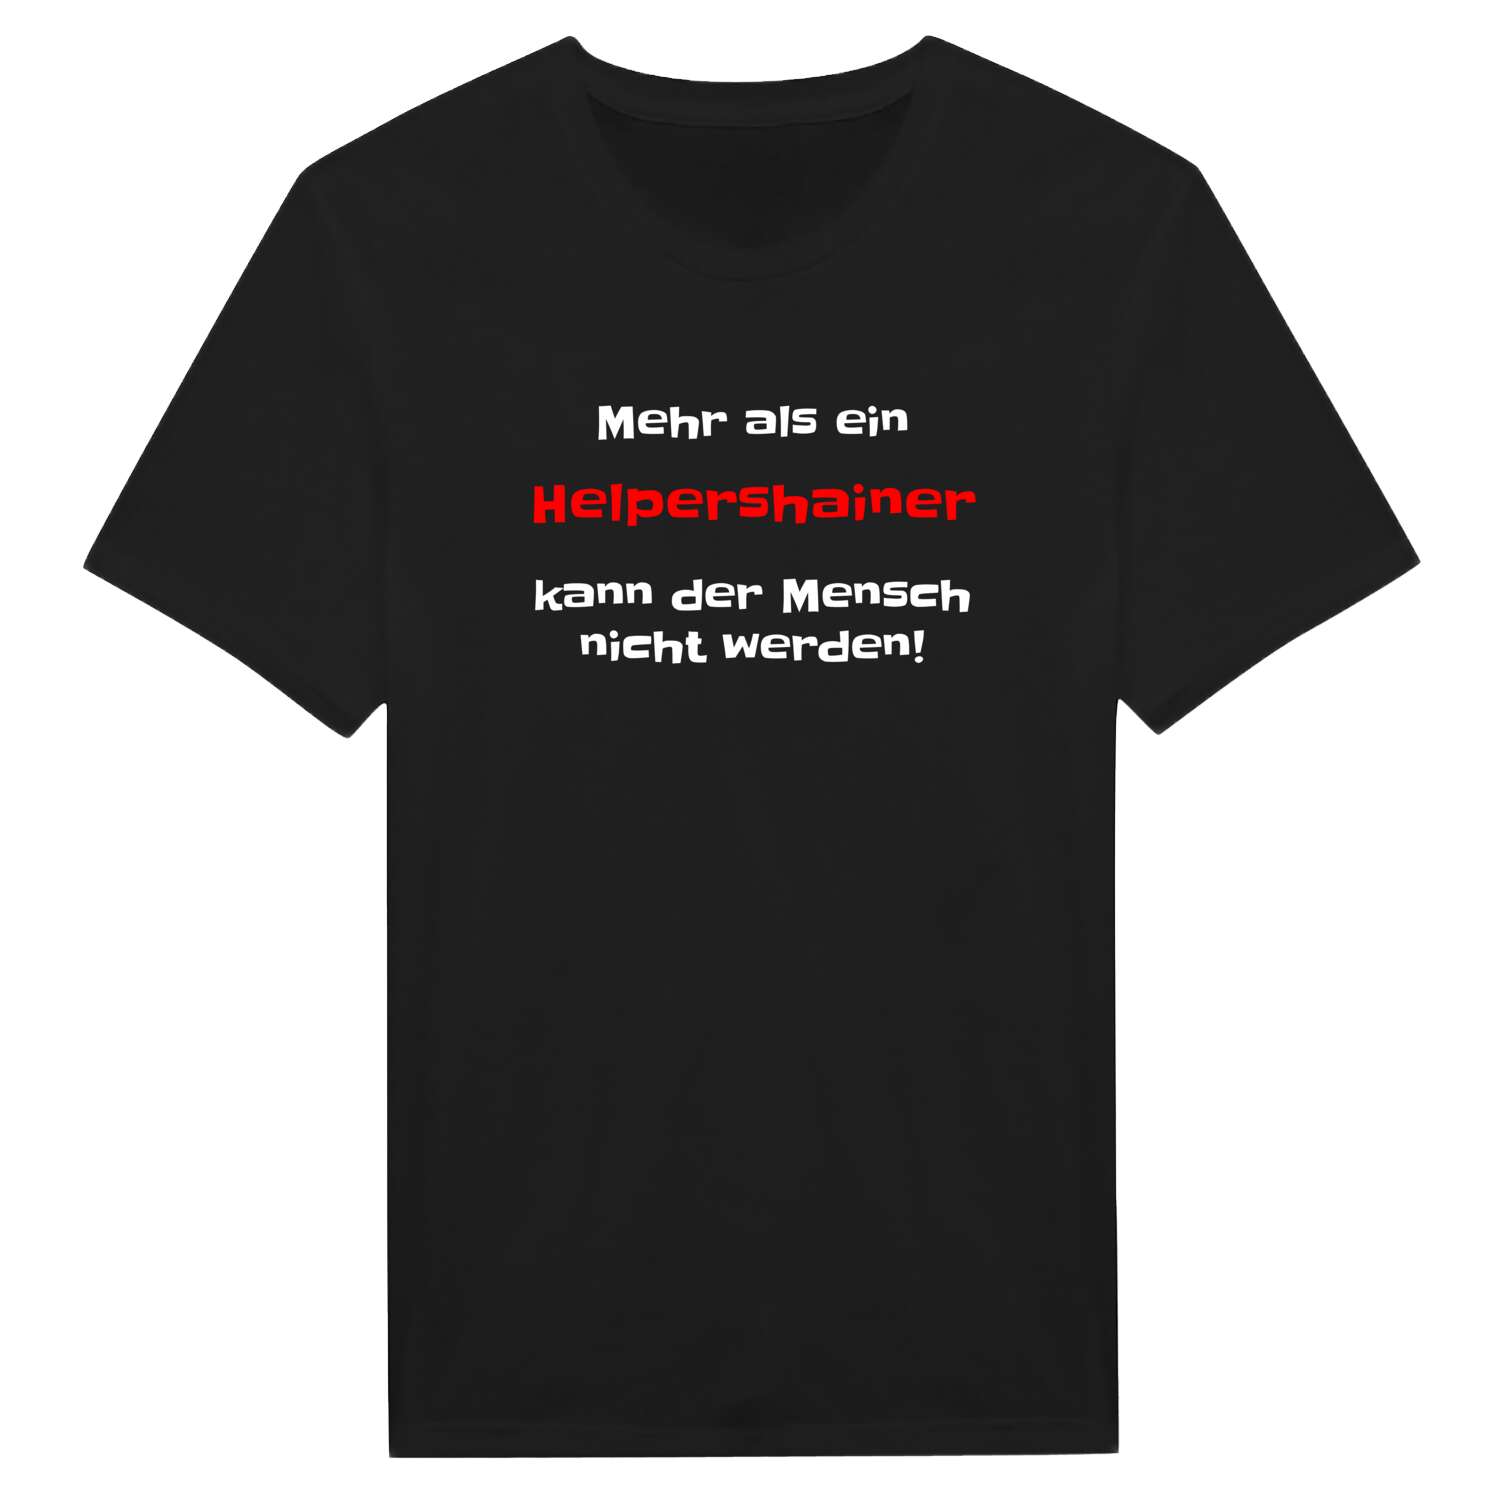 Helpershain T-Shirt »Mehr als ein«